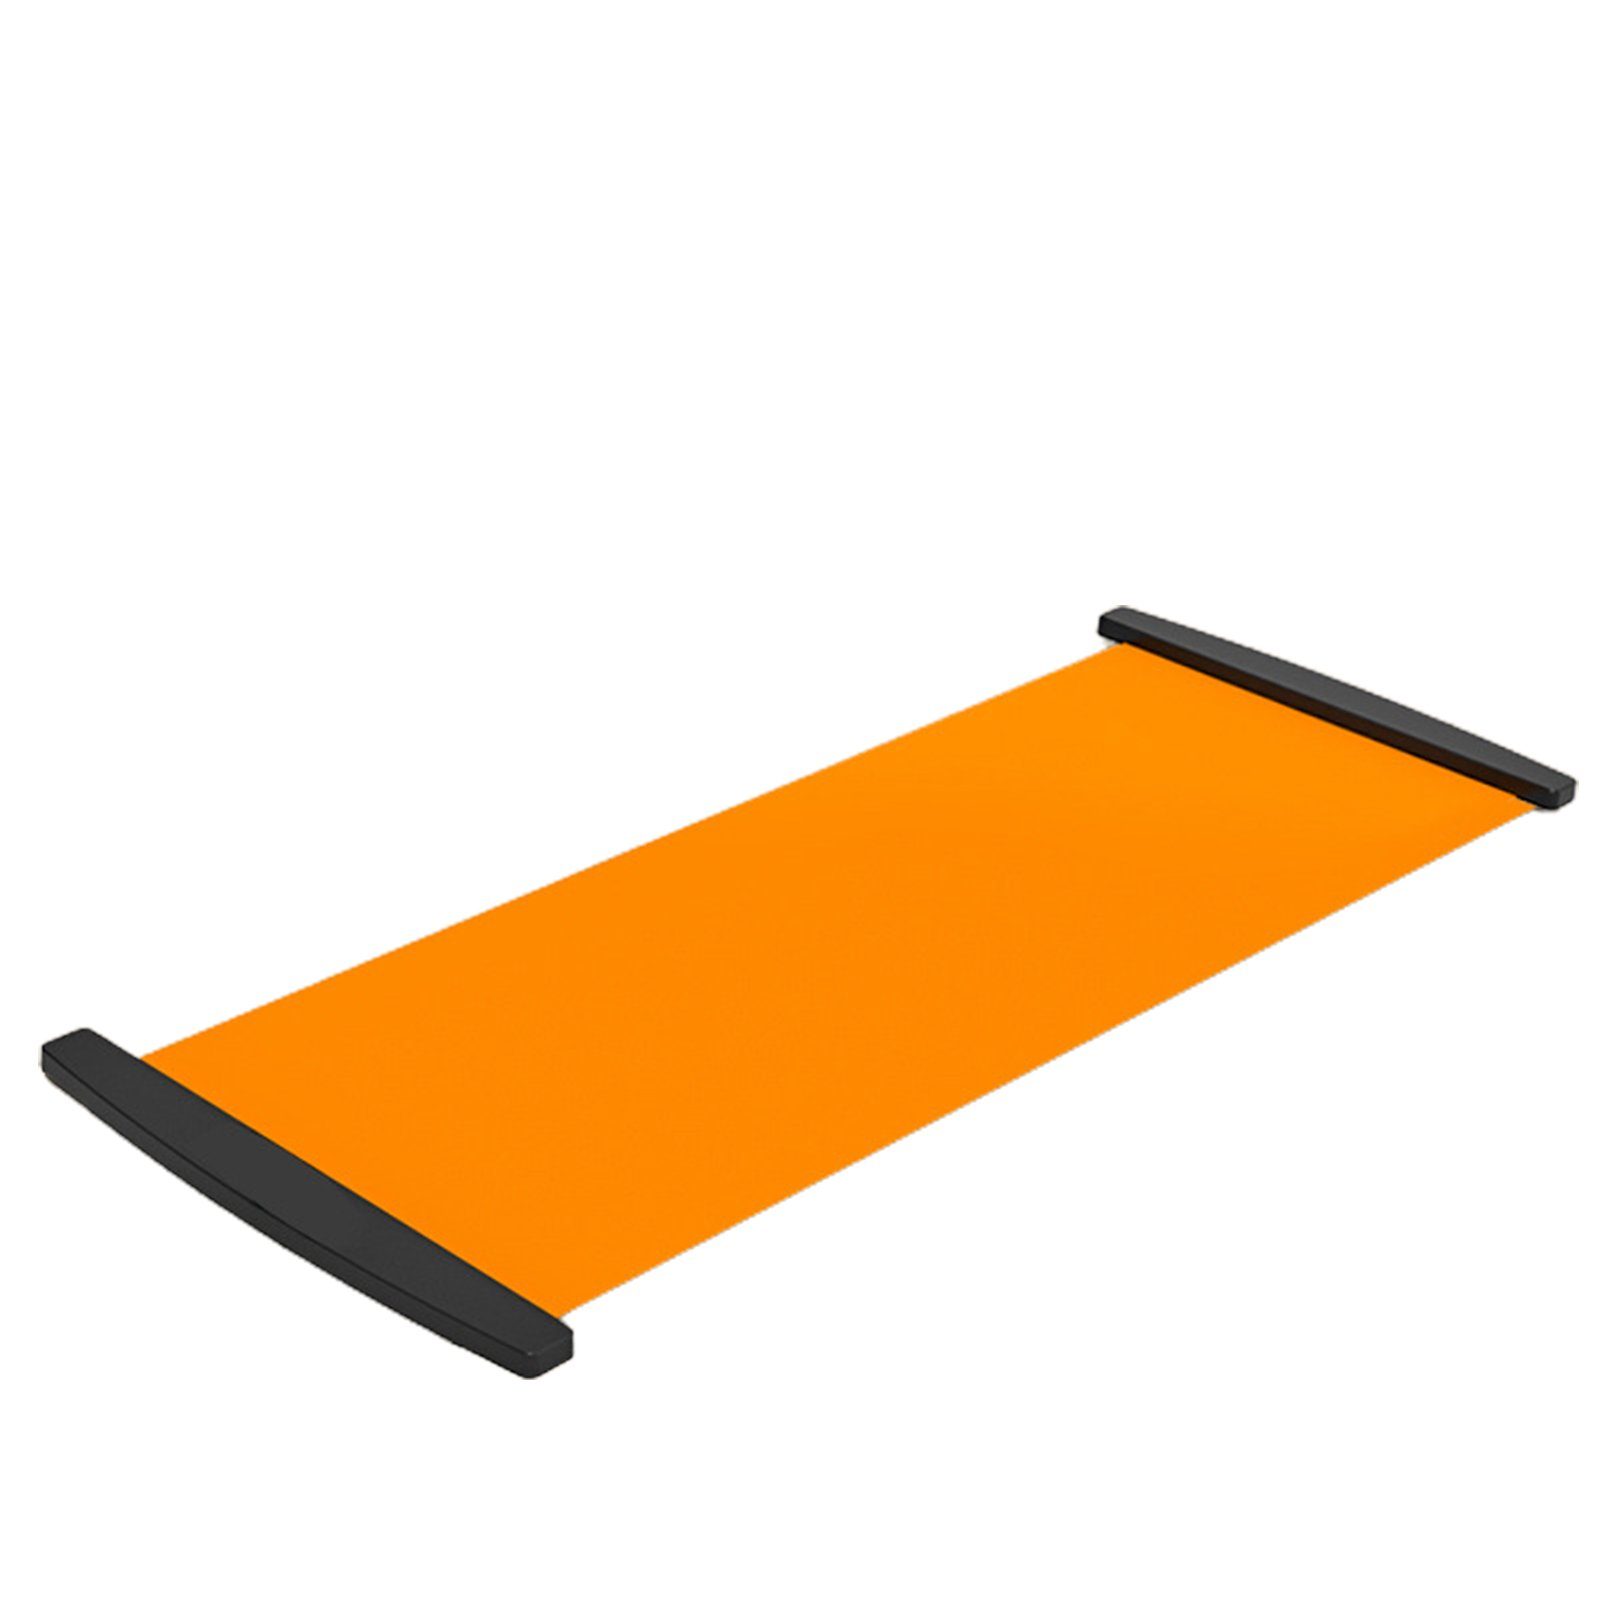 Blusmart Ski- und Snowboardträger Tragbares Gleitbrett, Superglattes PVC, Vielseitig Einsetzbarer orange3